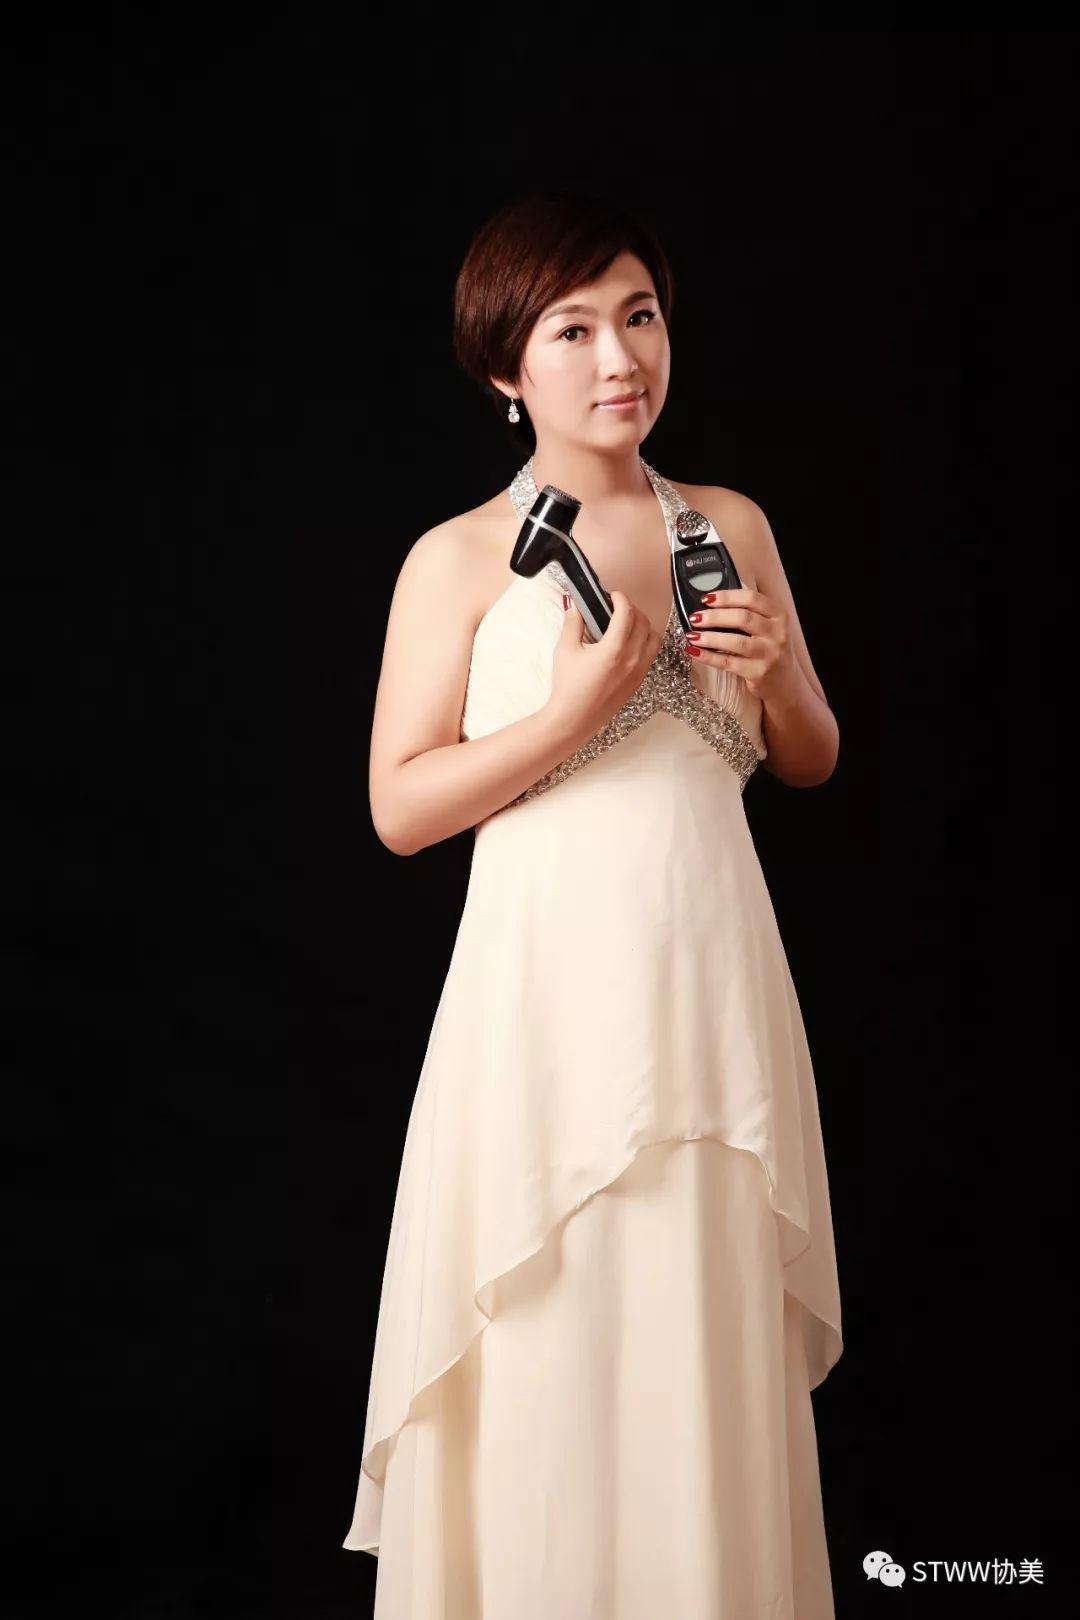 为艺术献身的女星——尹雪喜 Sul-hee Yoon - 哔哩哔哩